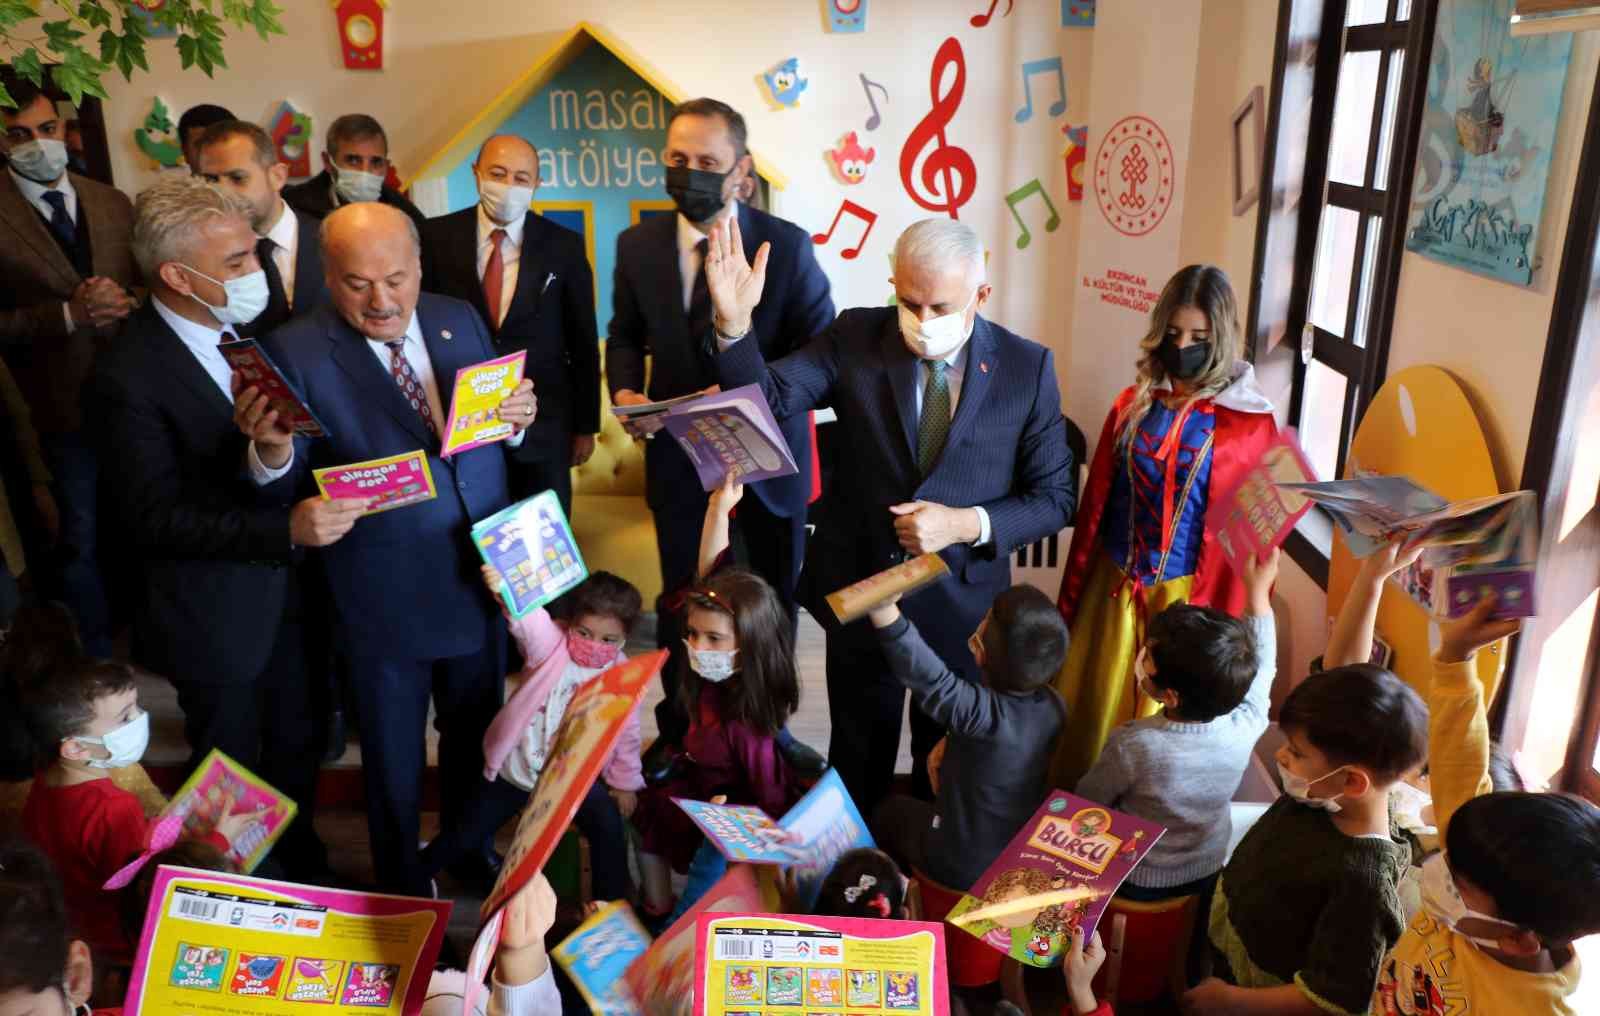 Kütüphane açılışı yapan Yıldırım, çocuklara hikâye okuyup, kitap hediye etti #erzincan